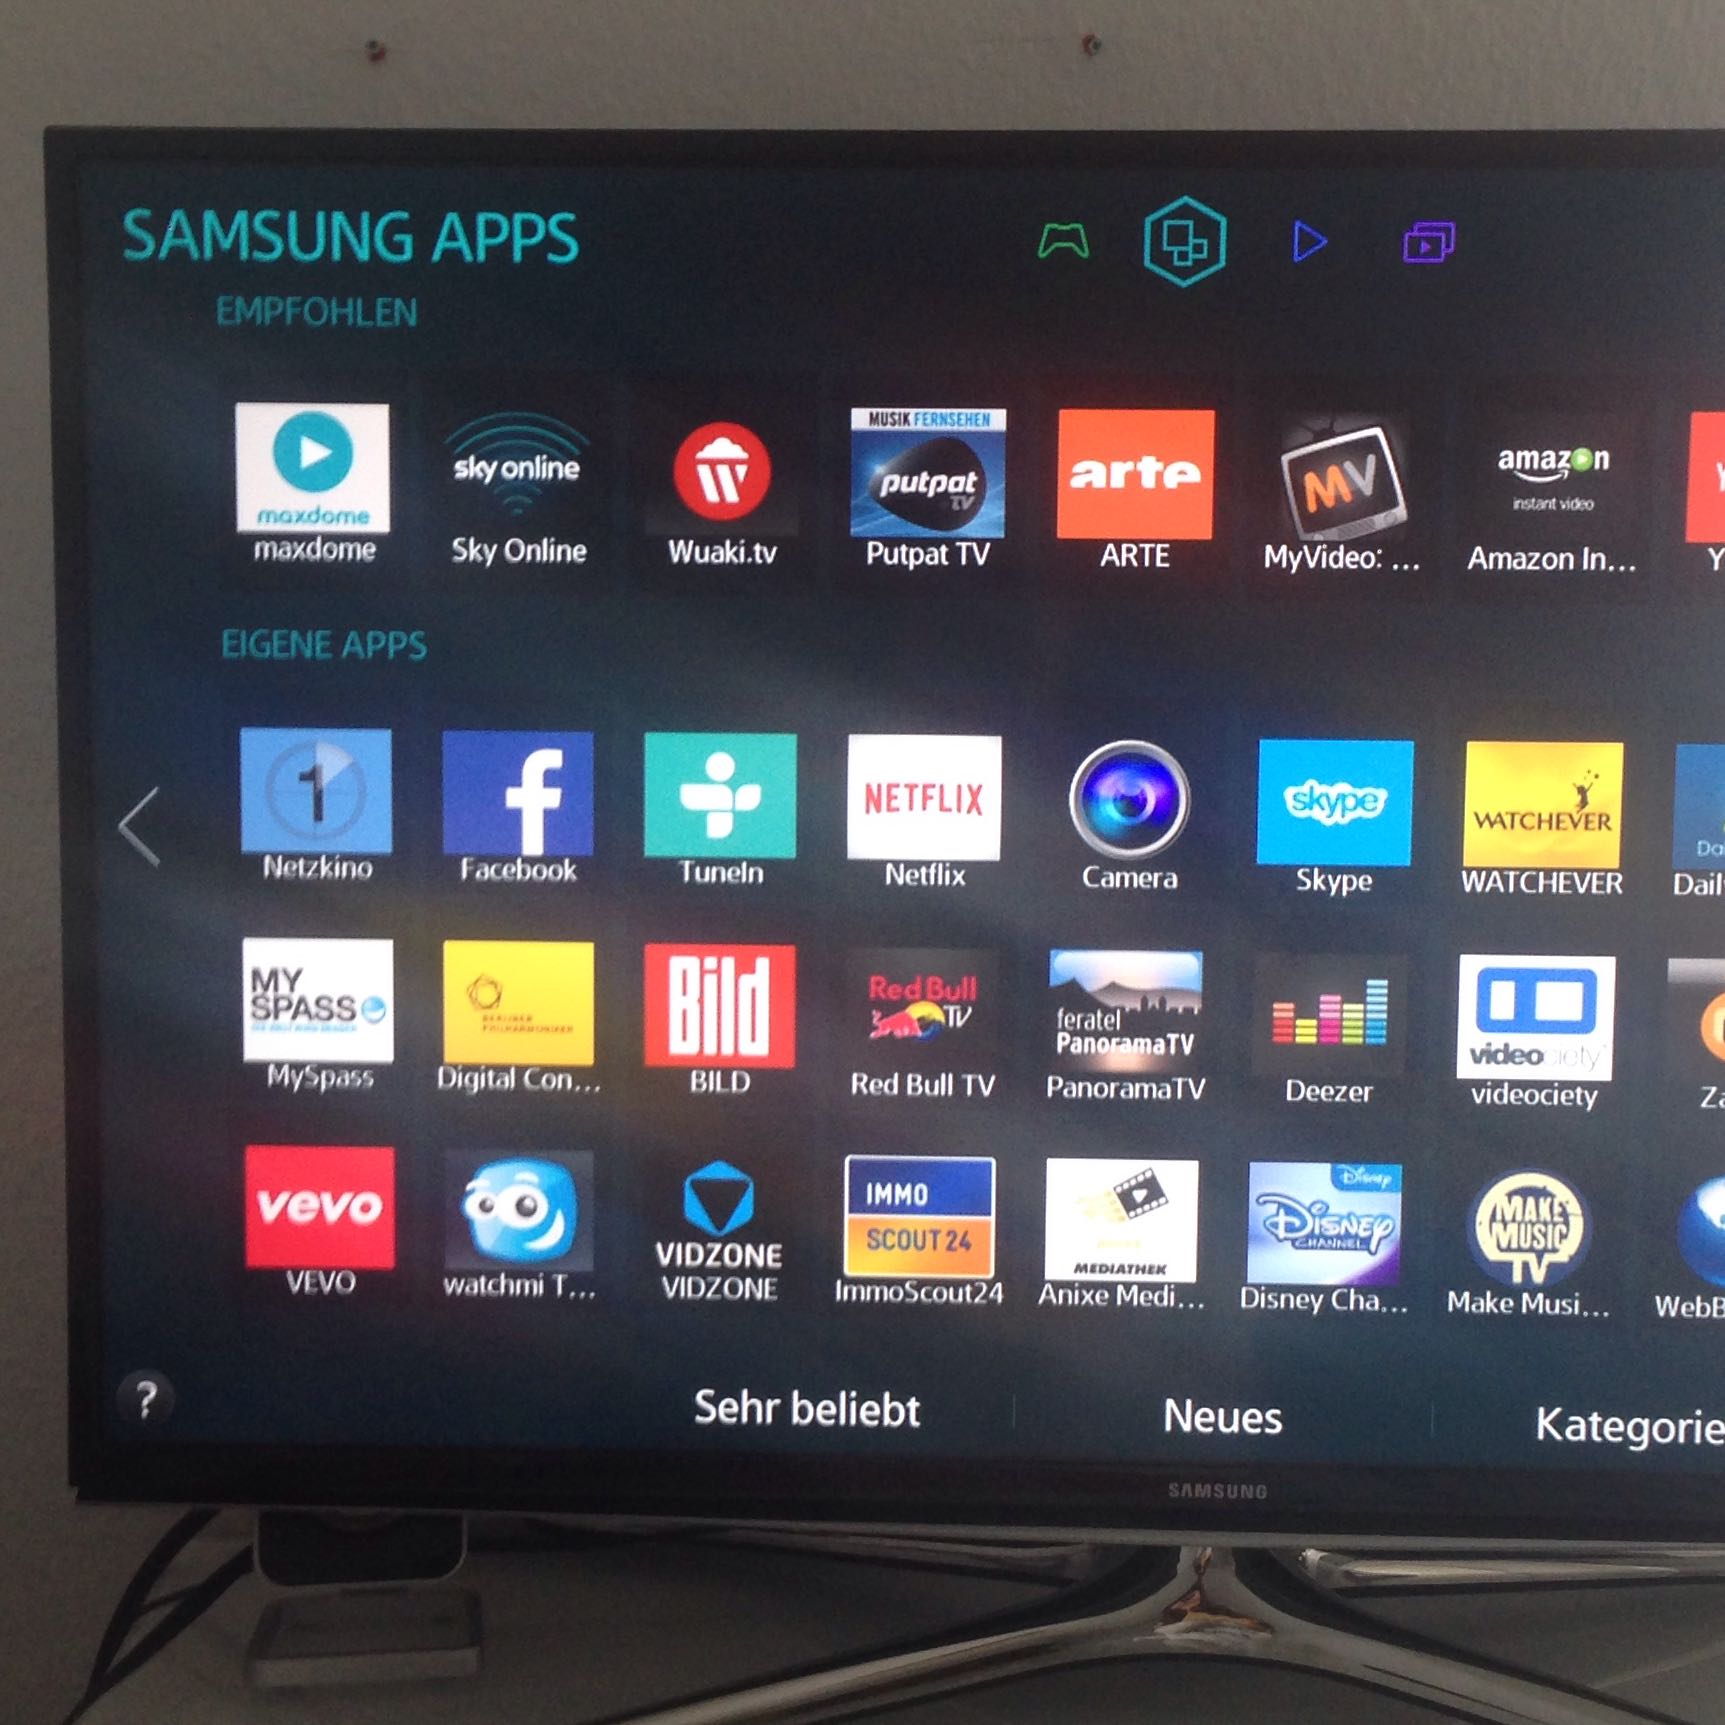 Приложение телевизор для смарт тв самсунг. Samsung Smart TV приложения. Samsung Smart TV Store. Samsung apps для телевизора Smart TV. Samsung TV 2014.